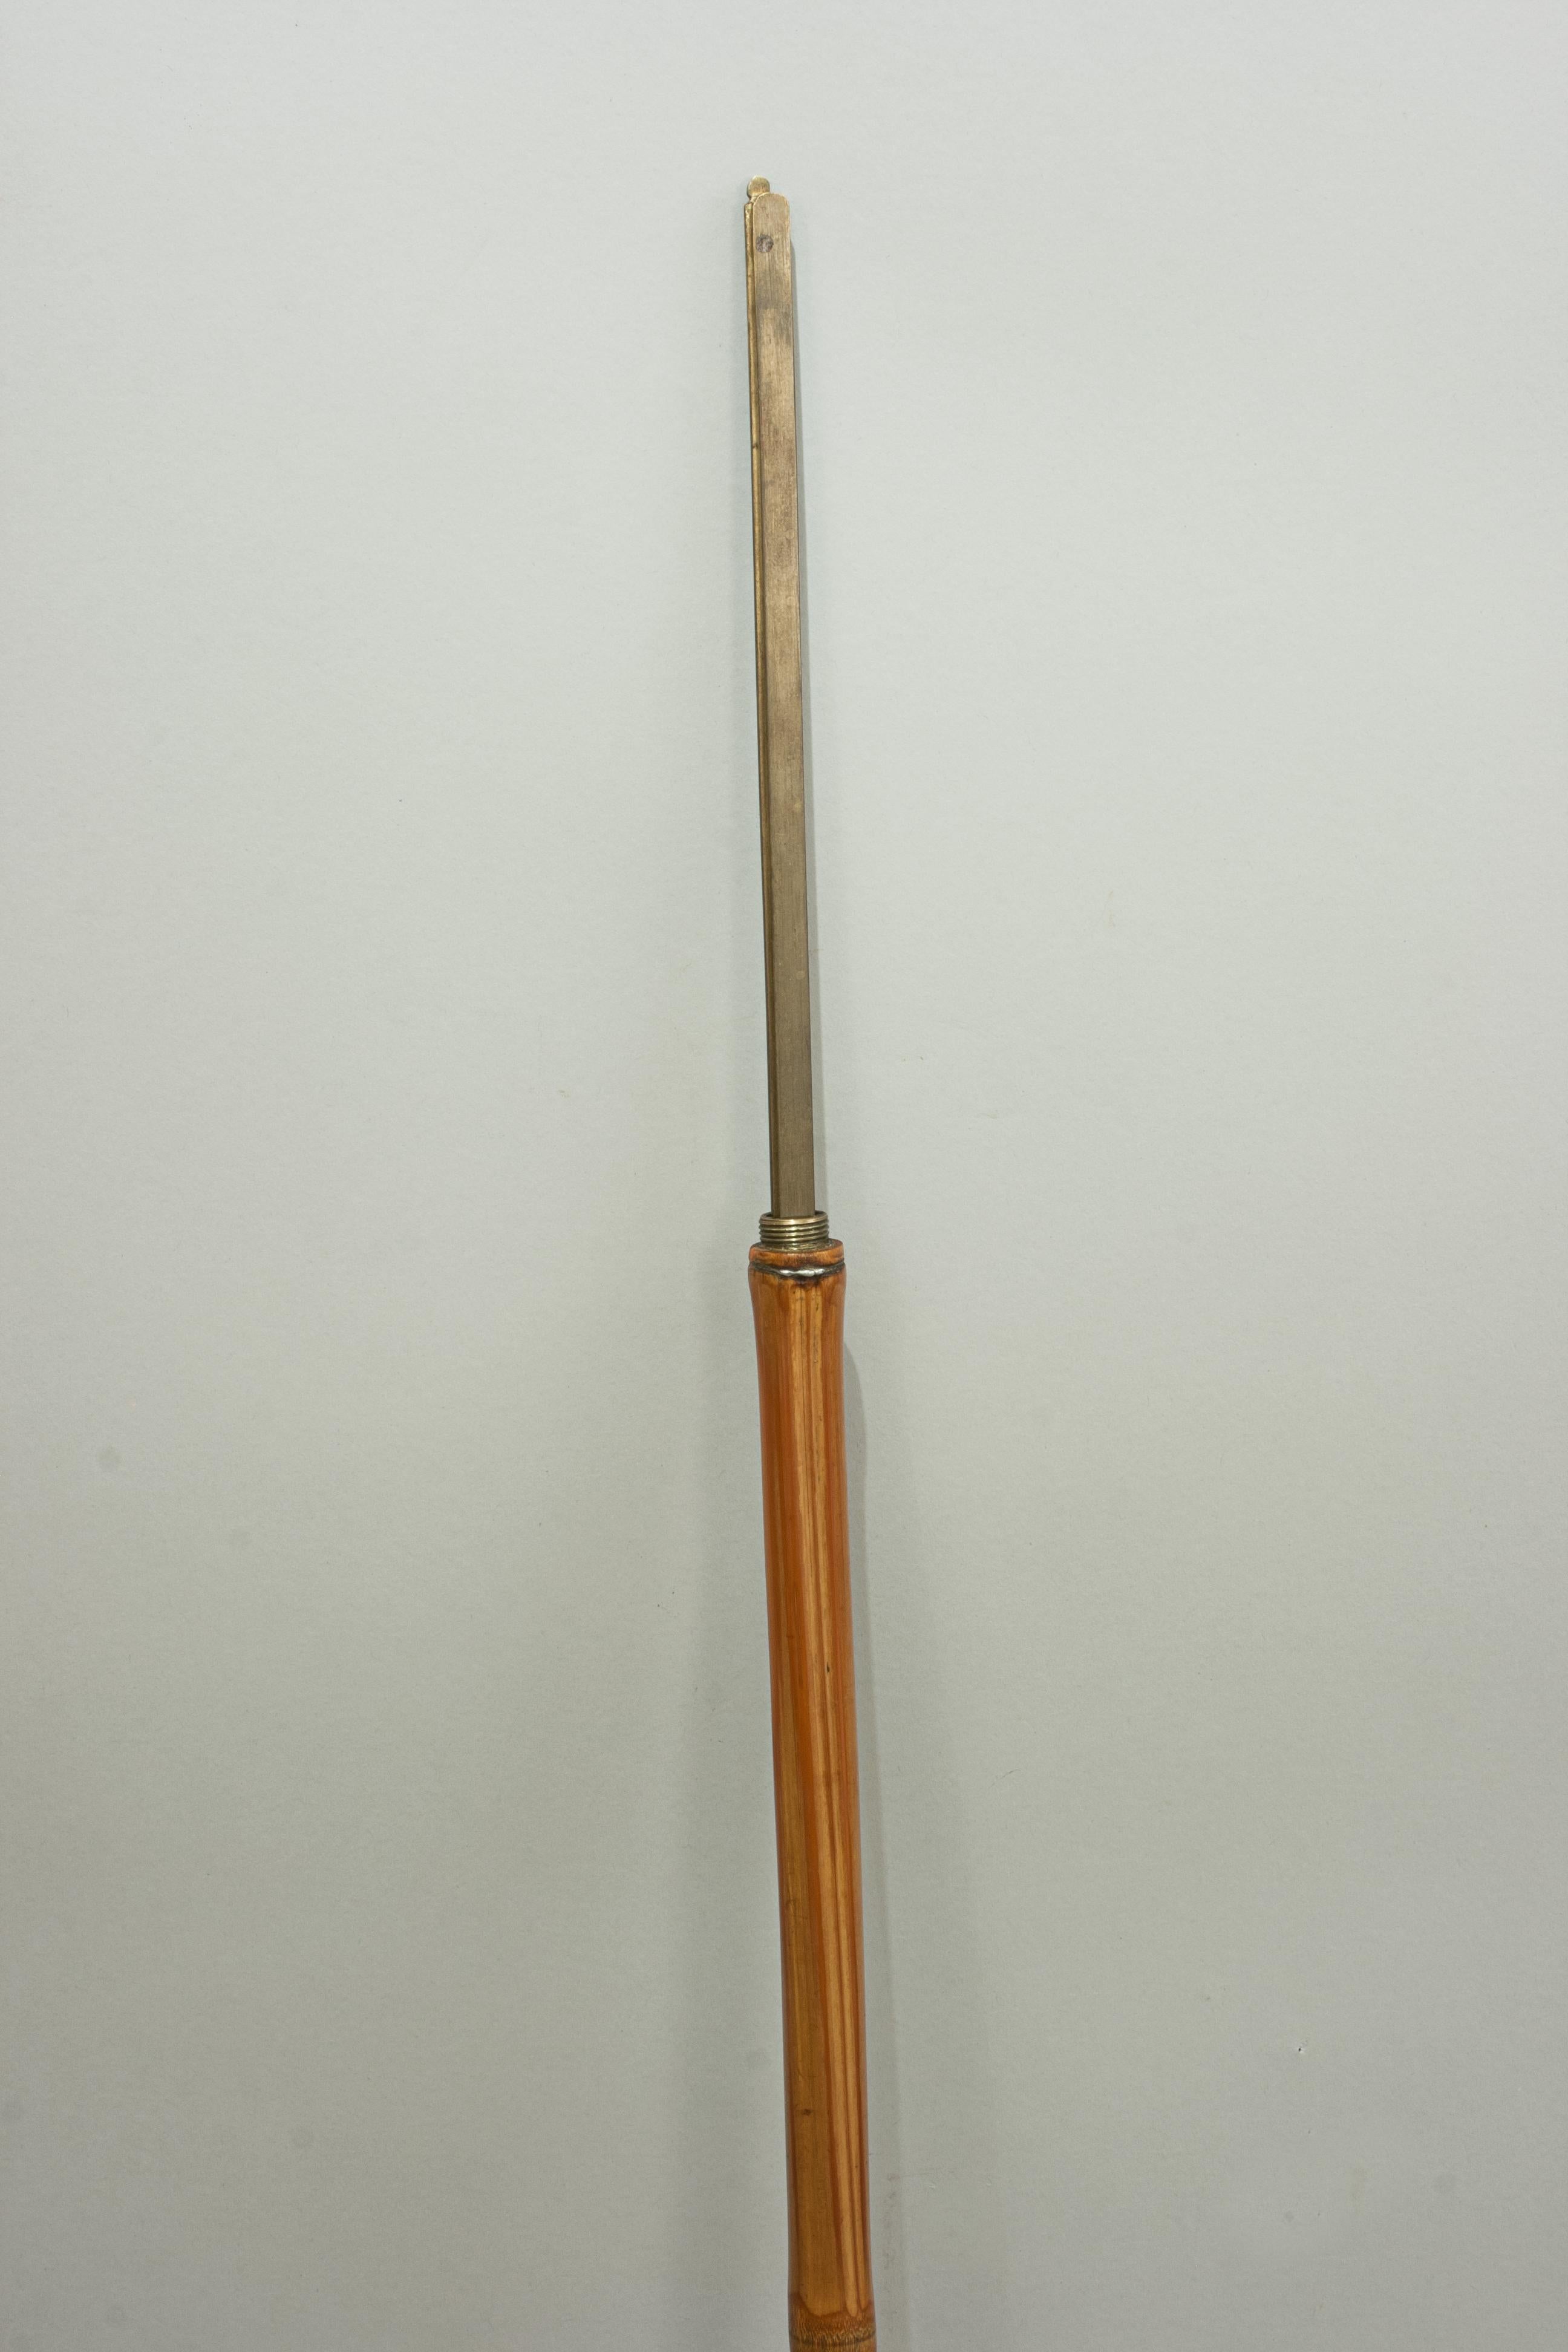 antique measuring stick